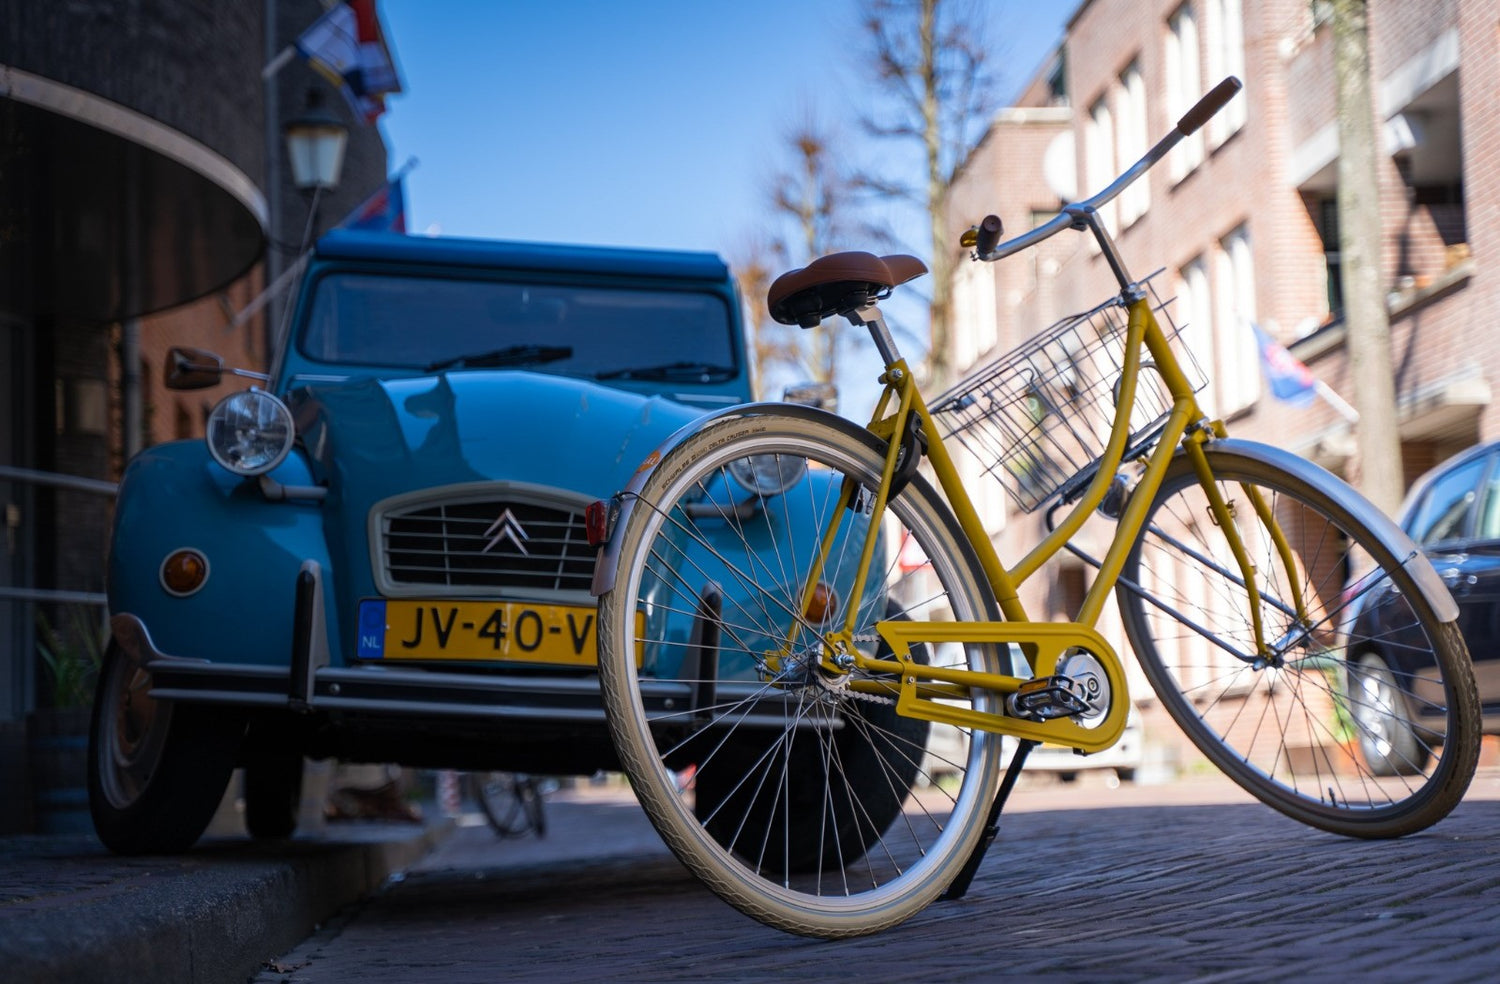 Roetz Road Ladies in mat rebel yellow met op de achtergrond blauwe Deux Chevaux. Klik voor de collectie van Roetz bikes.